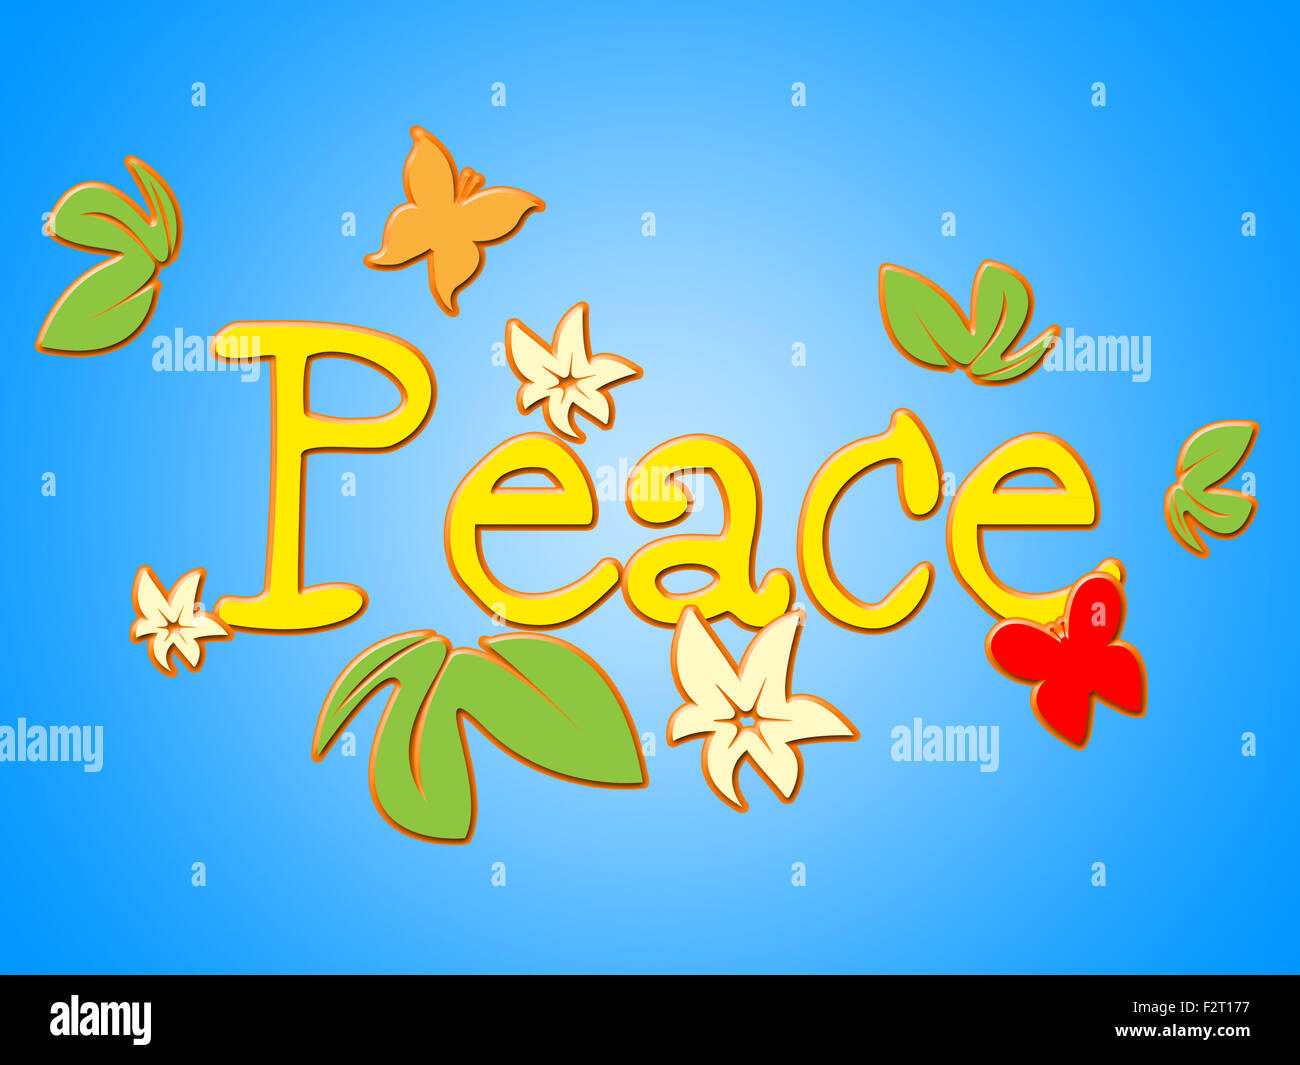 Frieden Botschaft Bedeutung Liebe nicht Krieg und Kontakt zu kommunizieren Stockfoto